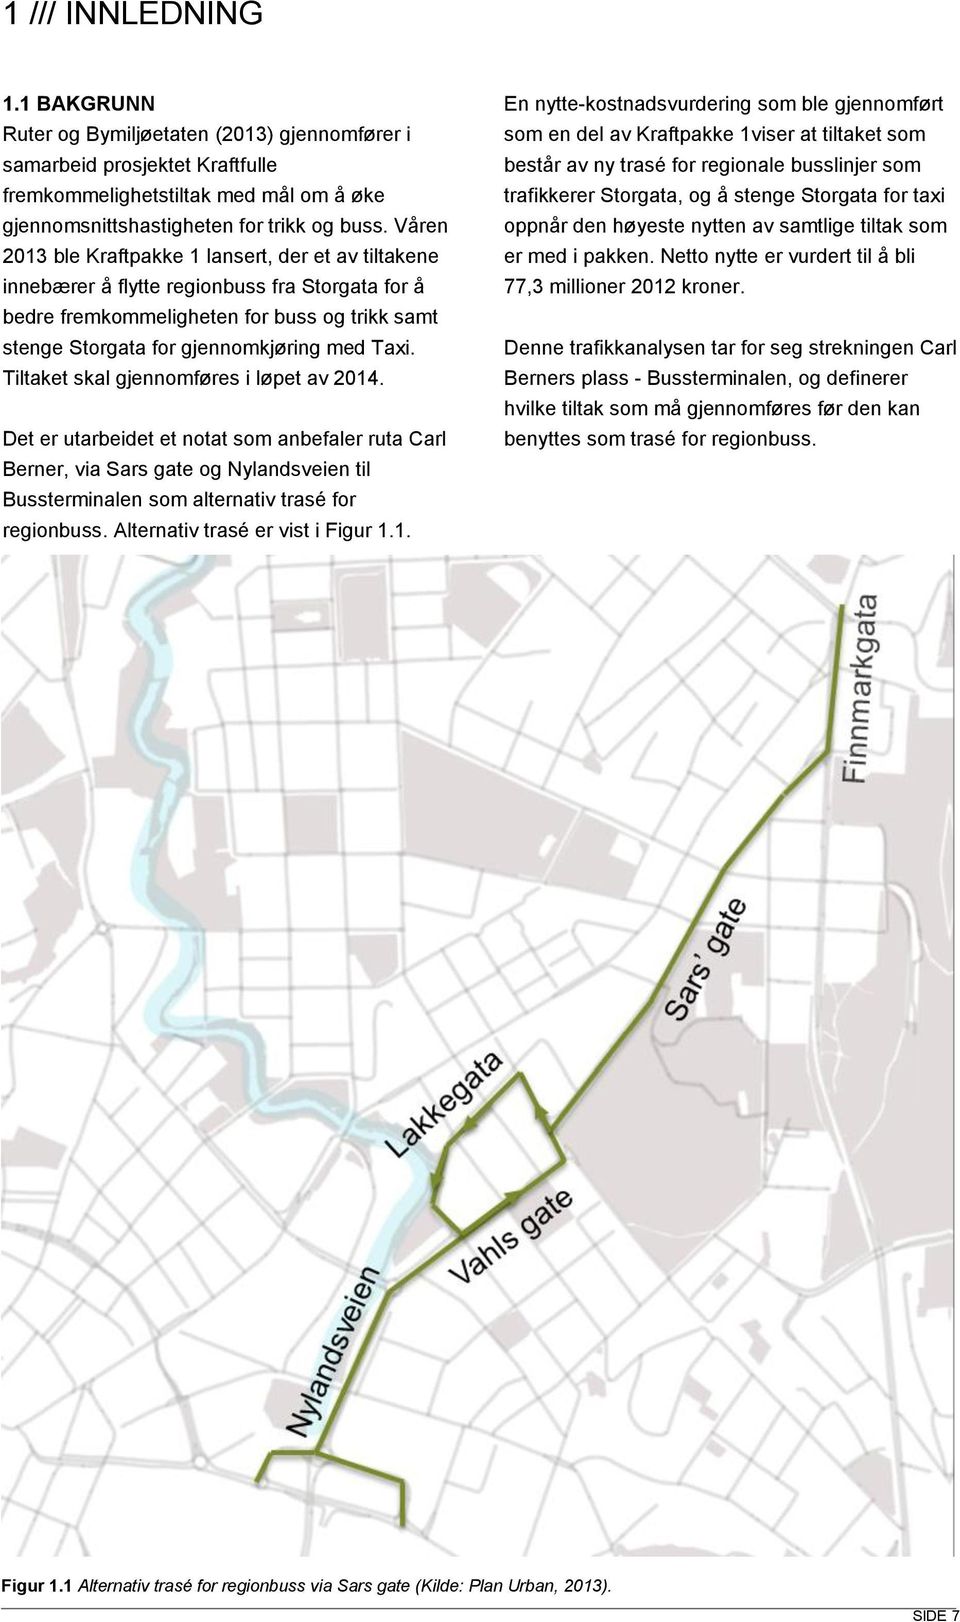 Tiltaket skal gjennomføres i løpet av 2014. Det er utarbeidet et notat som anbefaler ruta Carl Berner, via Sars gate og Nylandsveien til Bussterminalen som alternativ trasé for regionbuss.